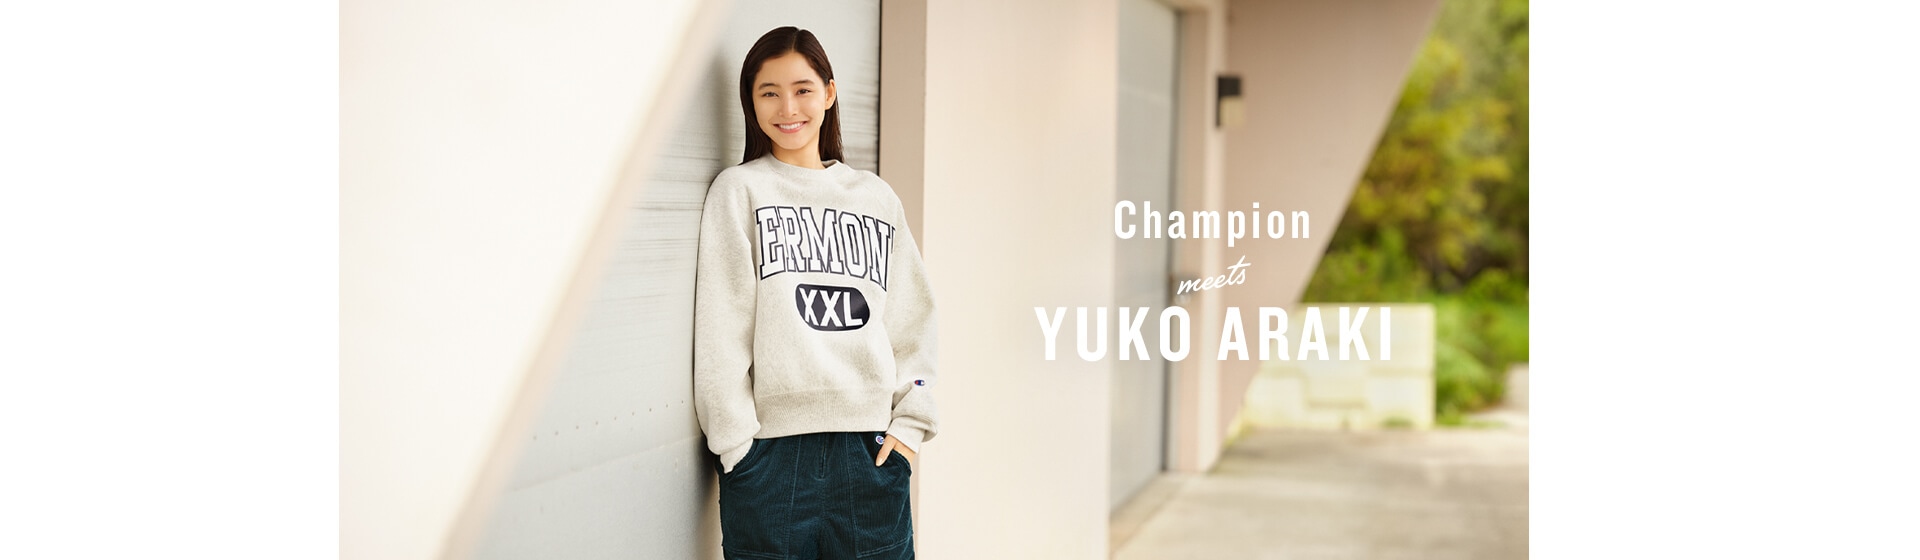 Champion meets YUKO ARAKI